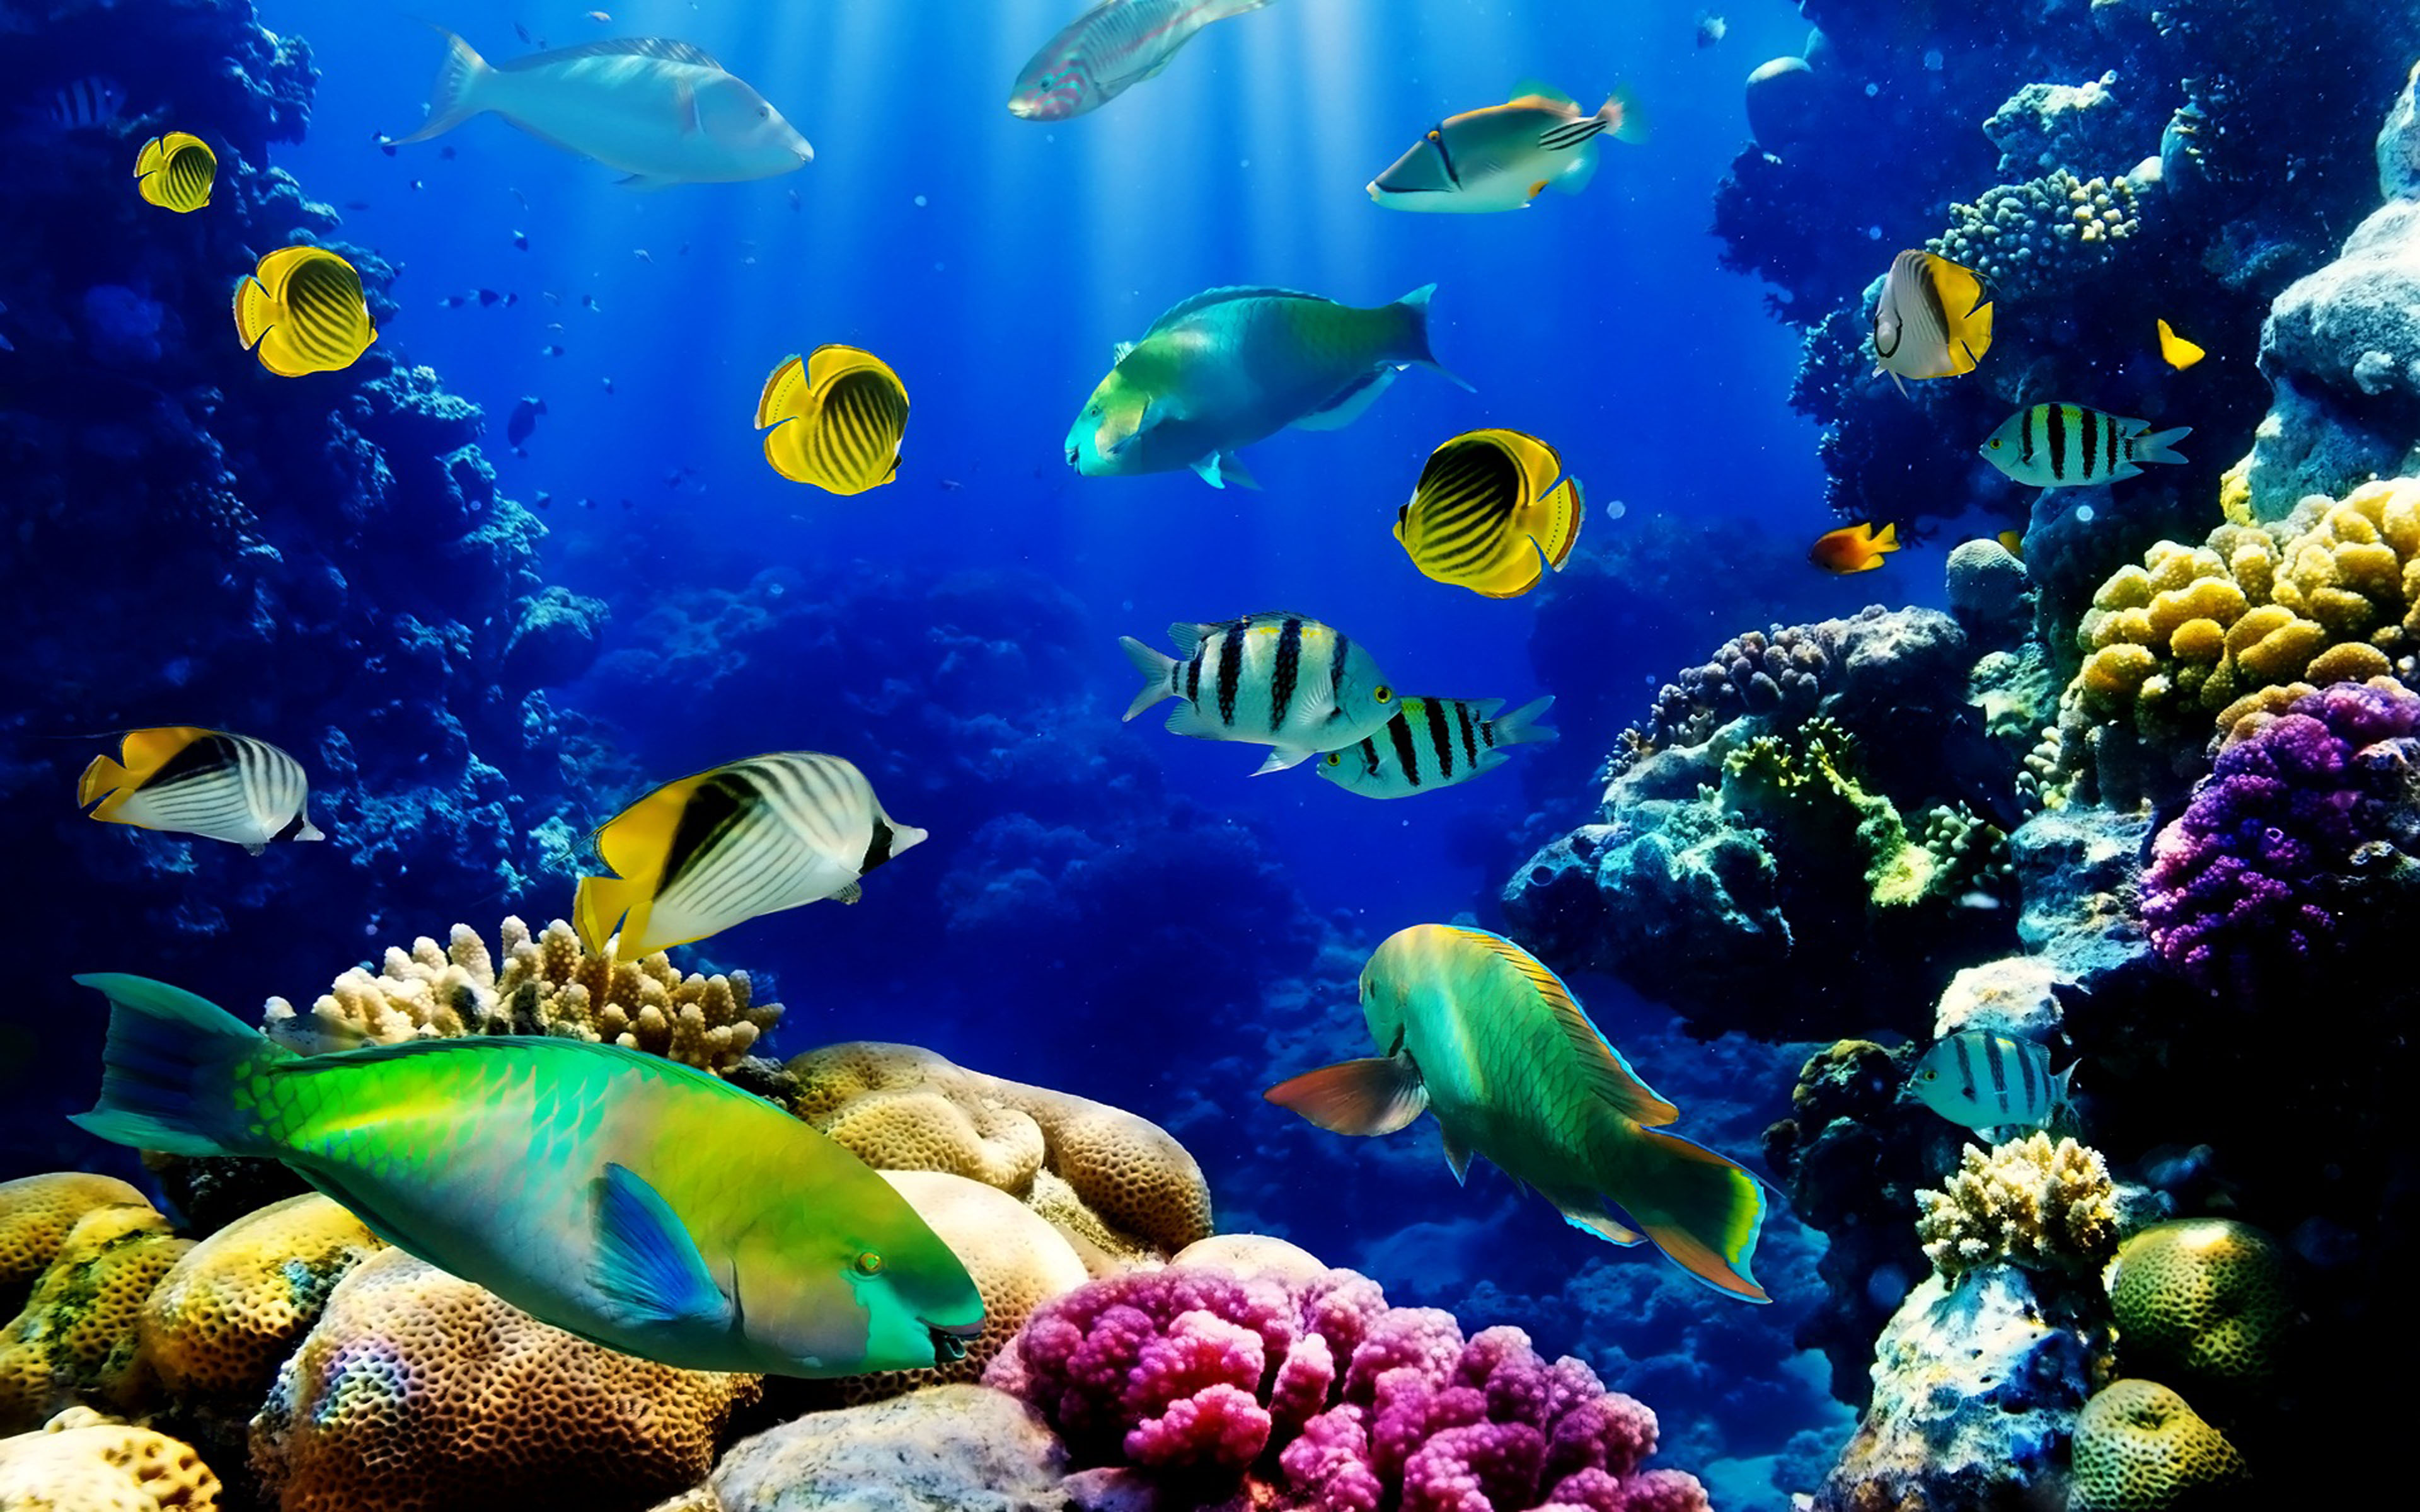 Fish Ocean seabedtropicalreef coralHd Wallpaper